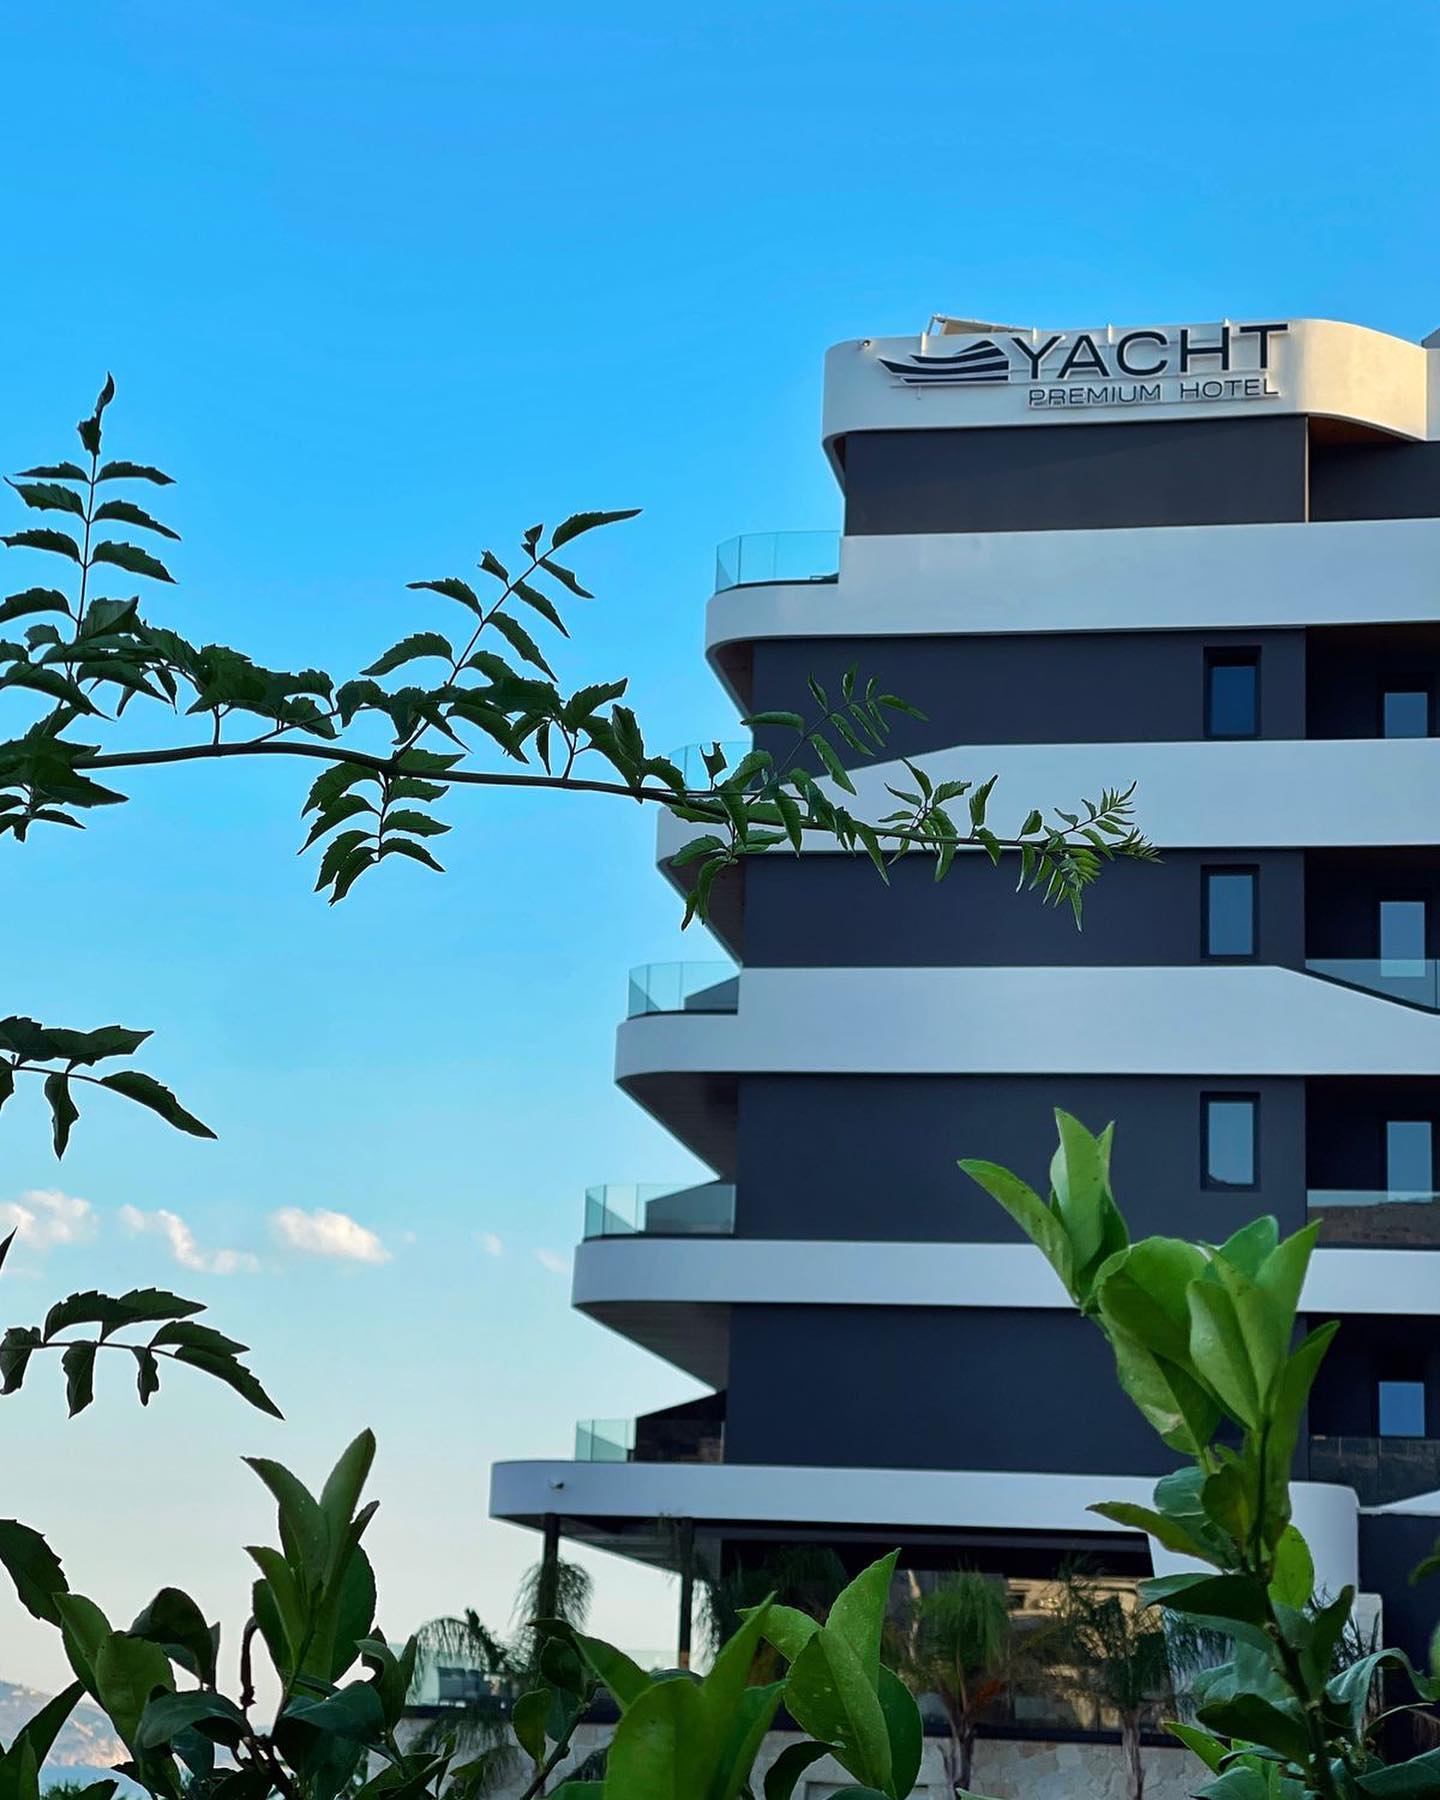 Dy herë tritol te hoteli Yacht Premium në Sarande , e shkuara e dyshimtë e pronarit Mariel Murati 